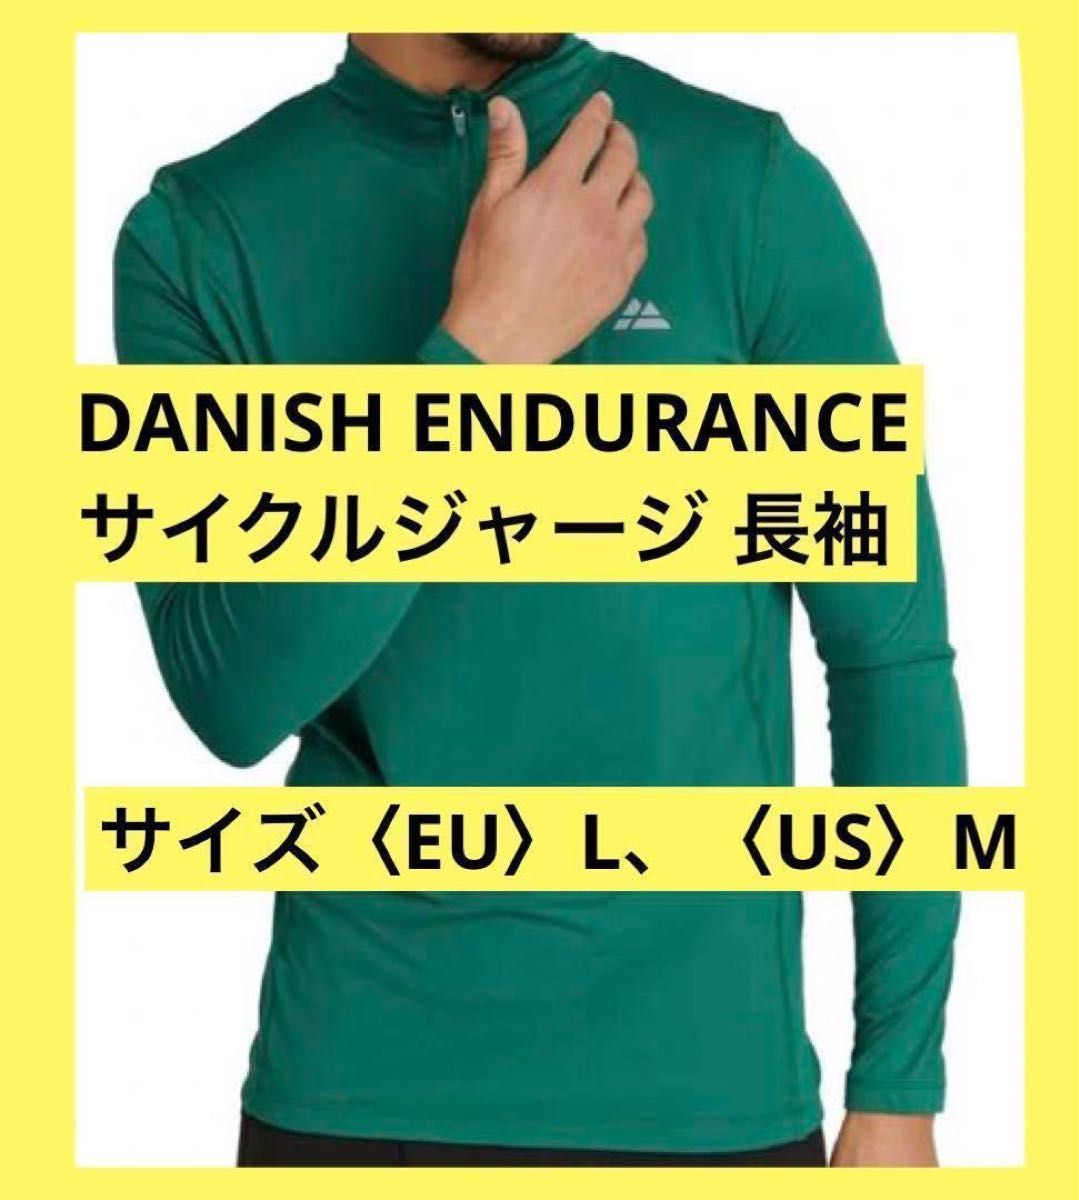 サイクルジャージ 長袖 DANISH ENDURANCE メンズ グリーン 緑 〈EU〉L〈US〉M 日本サイズでLかLLサイズ位